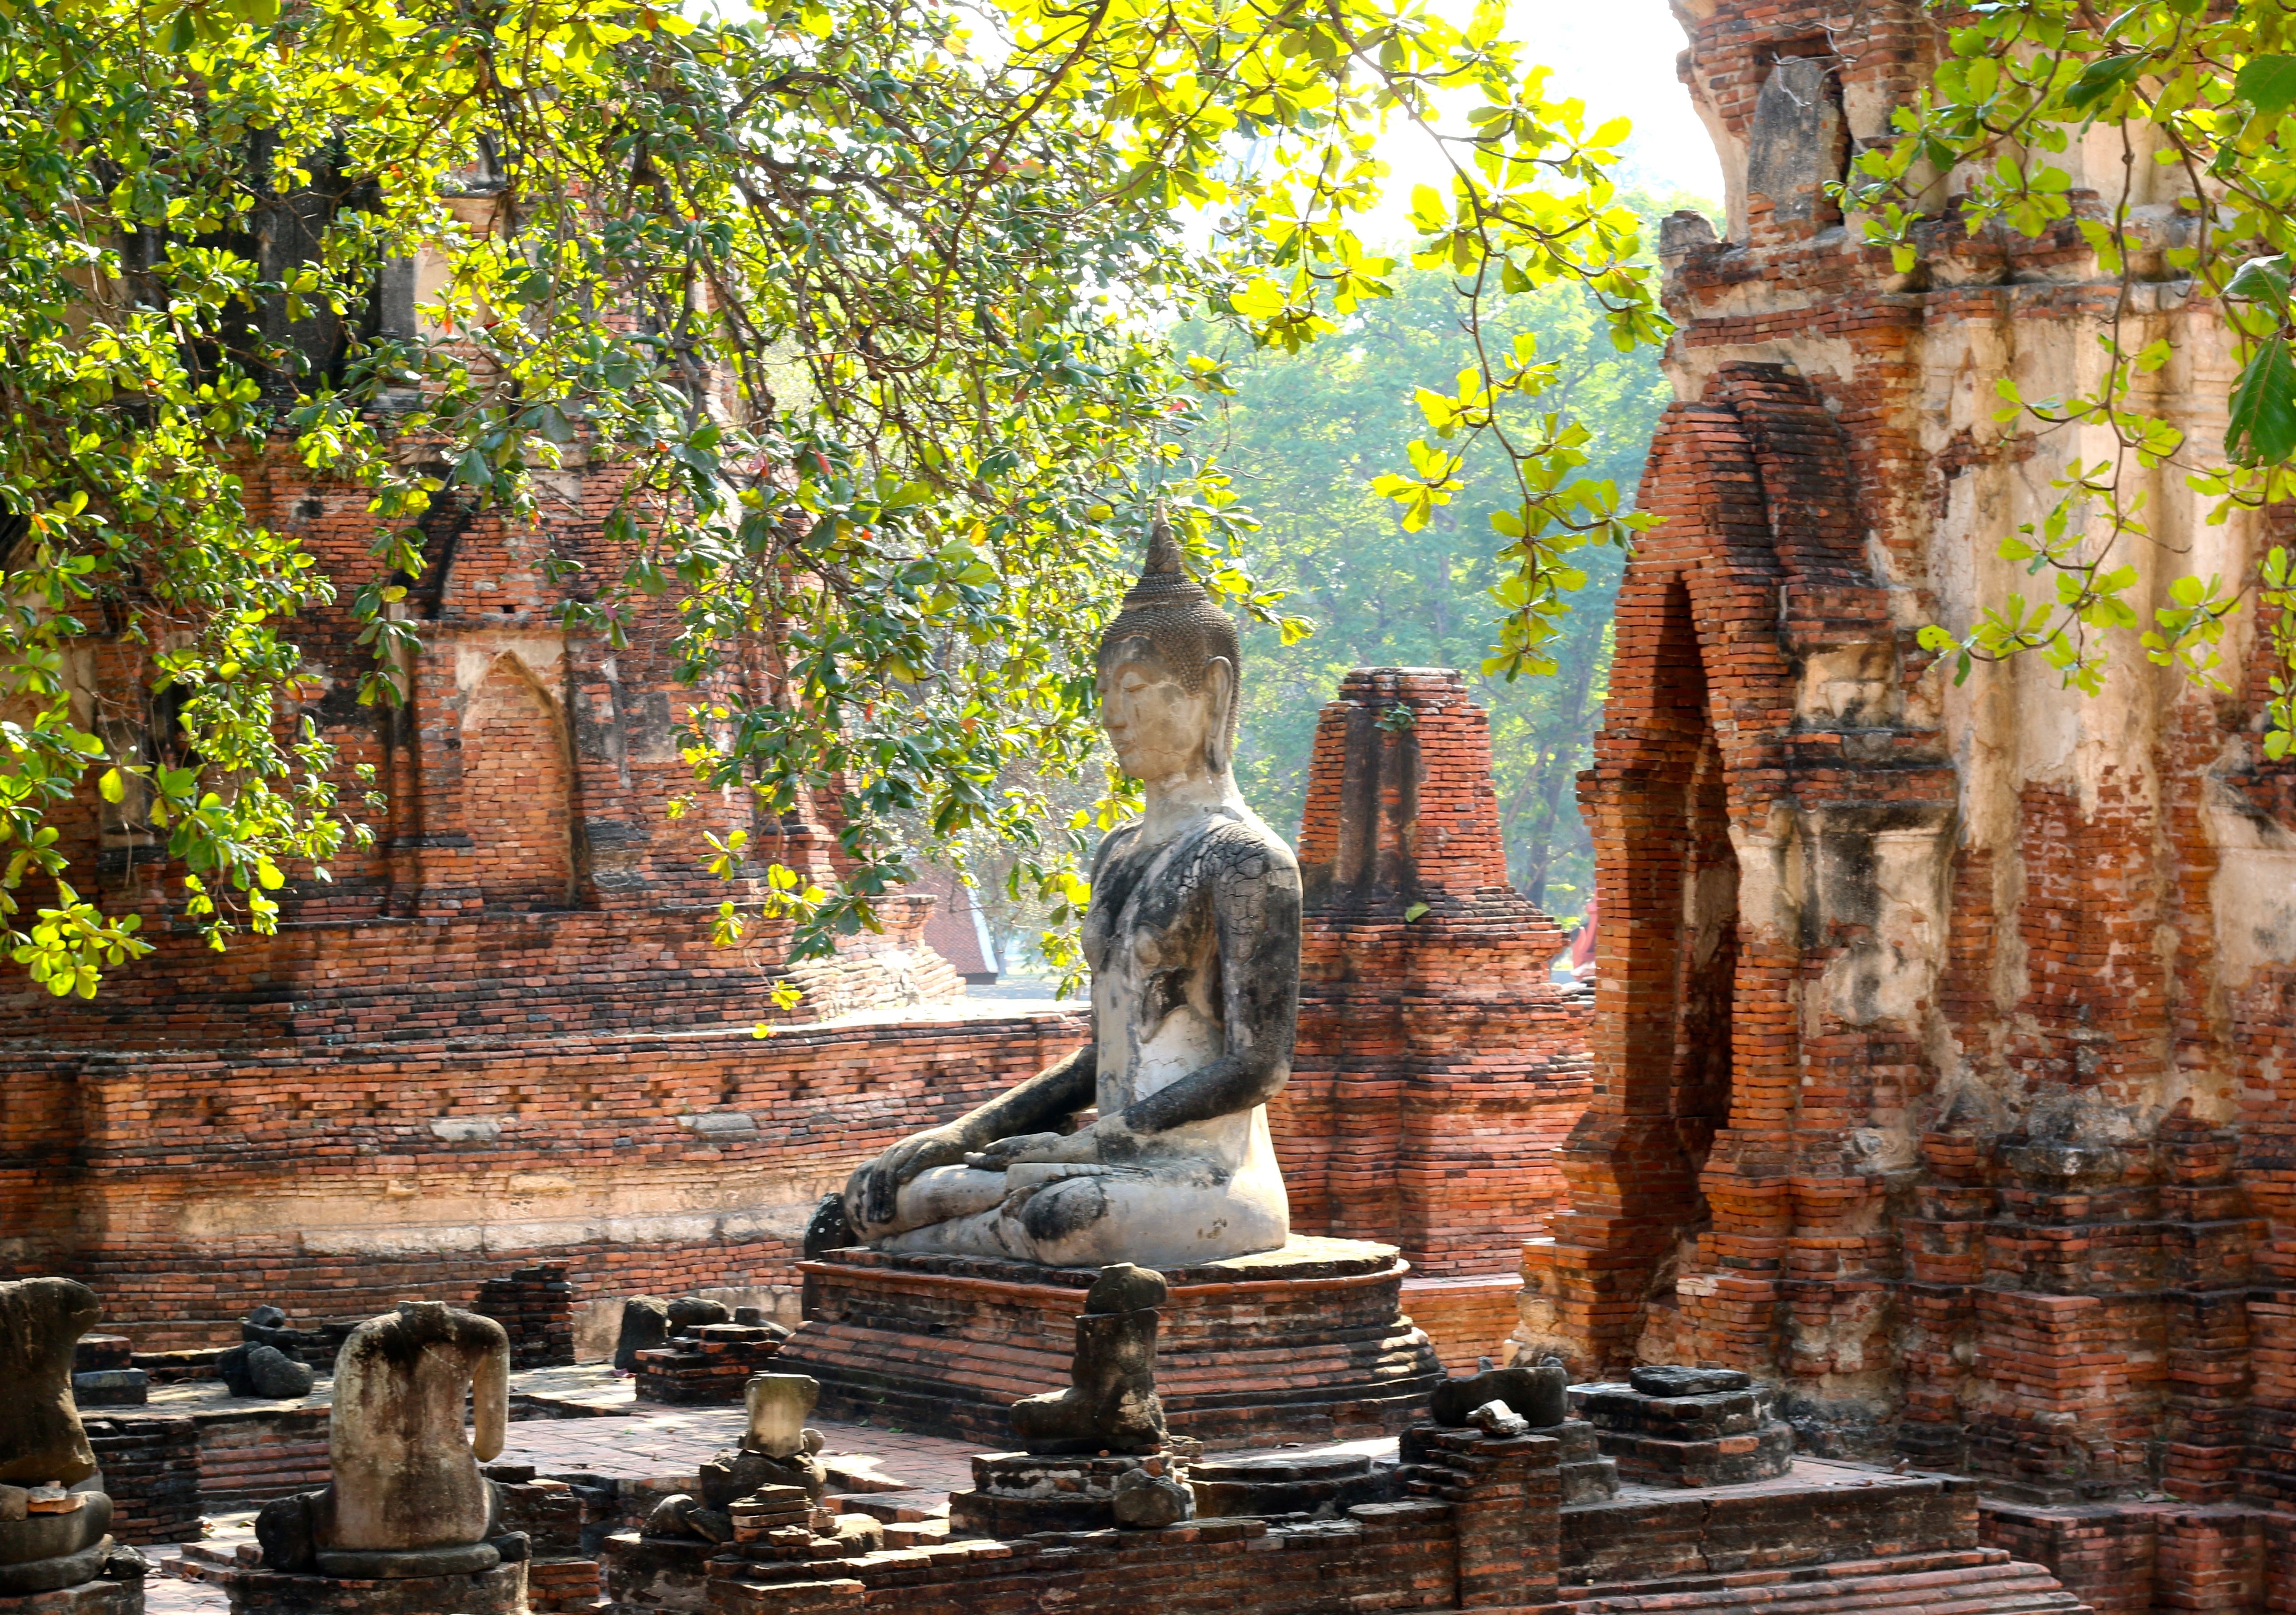 The ruins at Wat Mahathat in Ayutthaya, Thailand